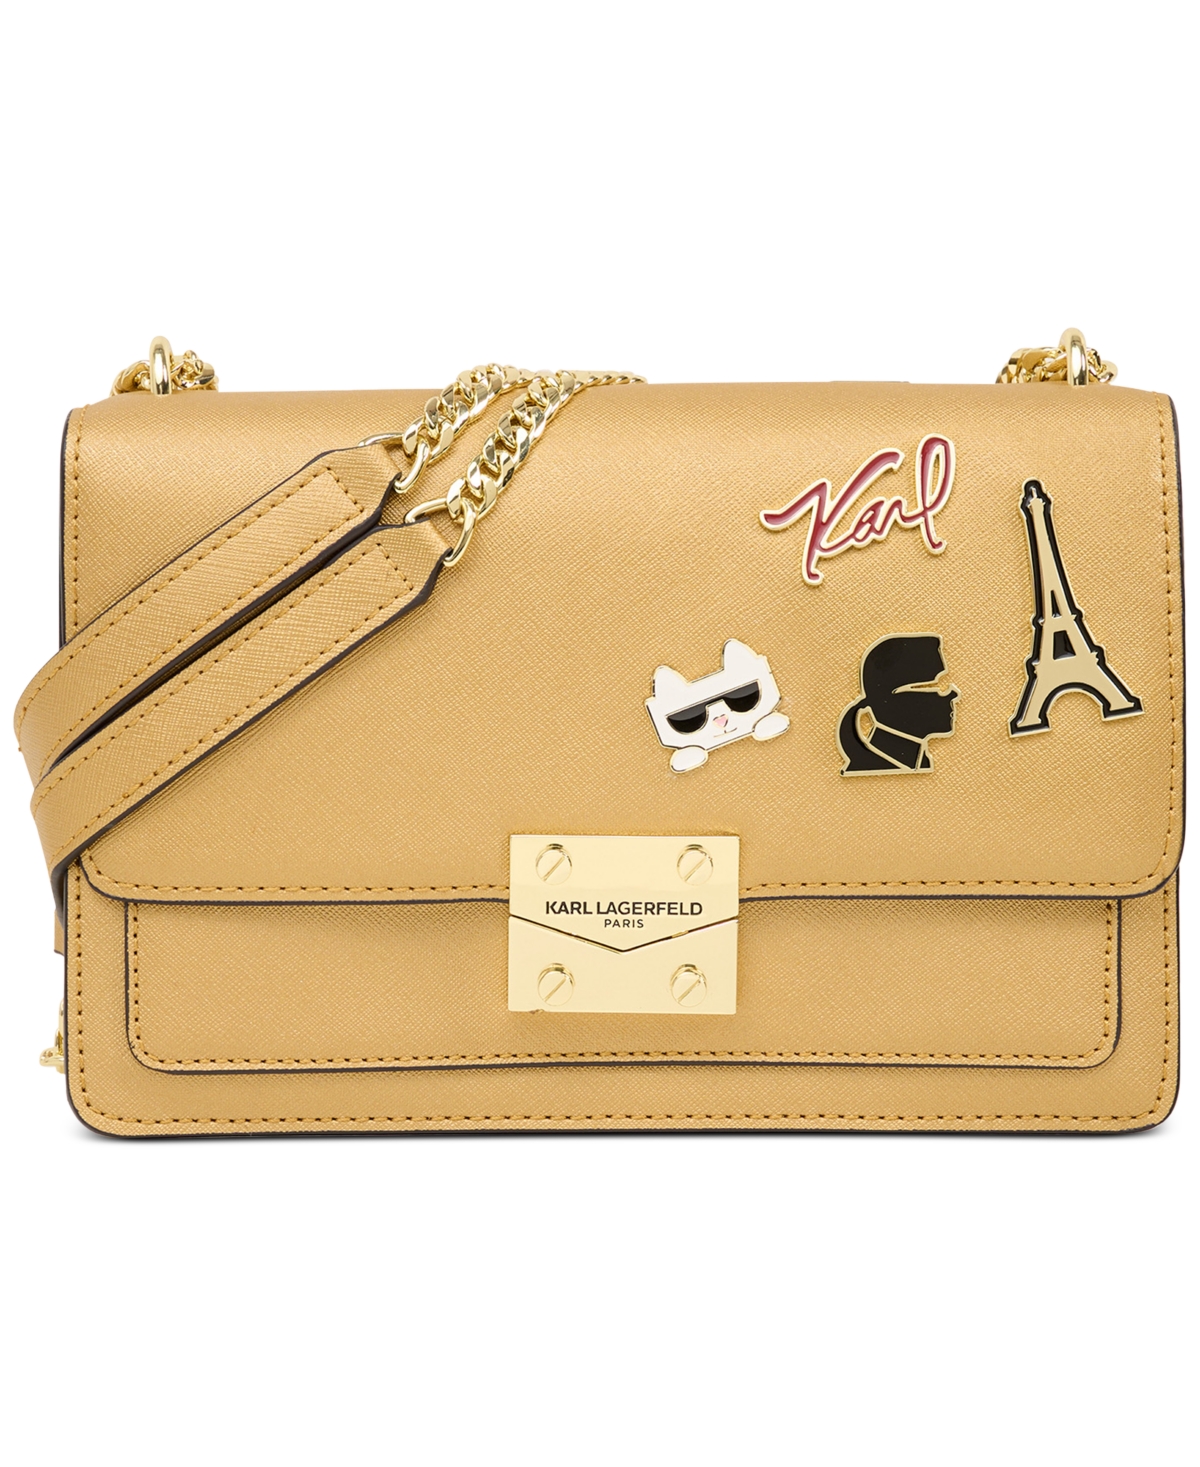 Karl Lagerfeld Paris Wallets, Bags